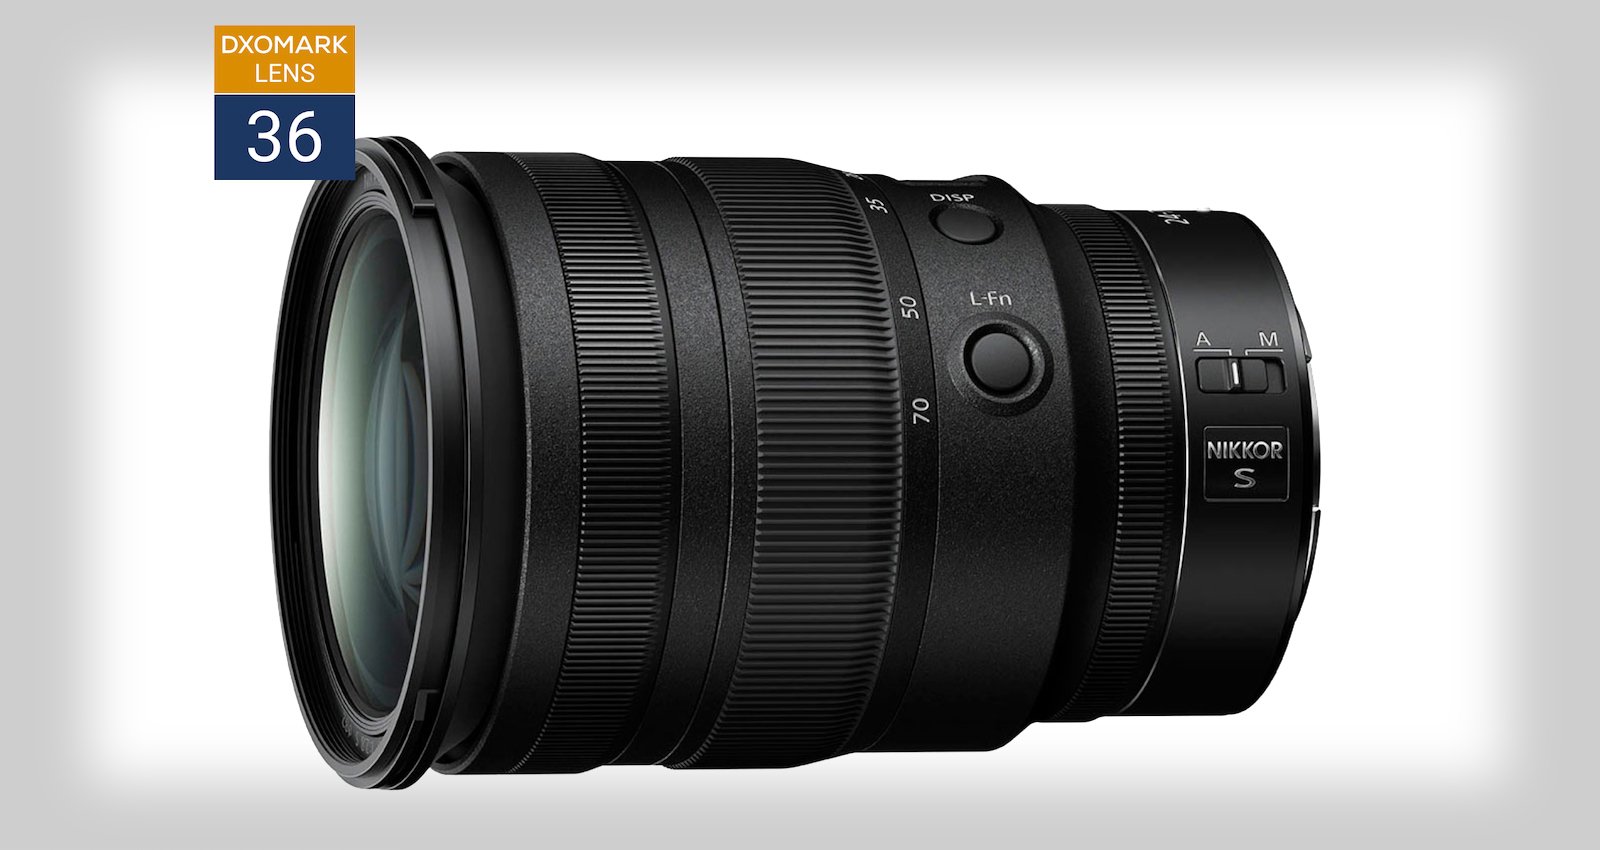  lens 24-70mm dxomark 